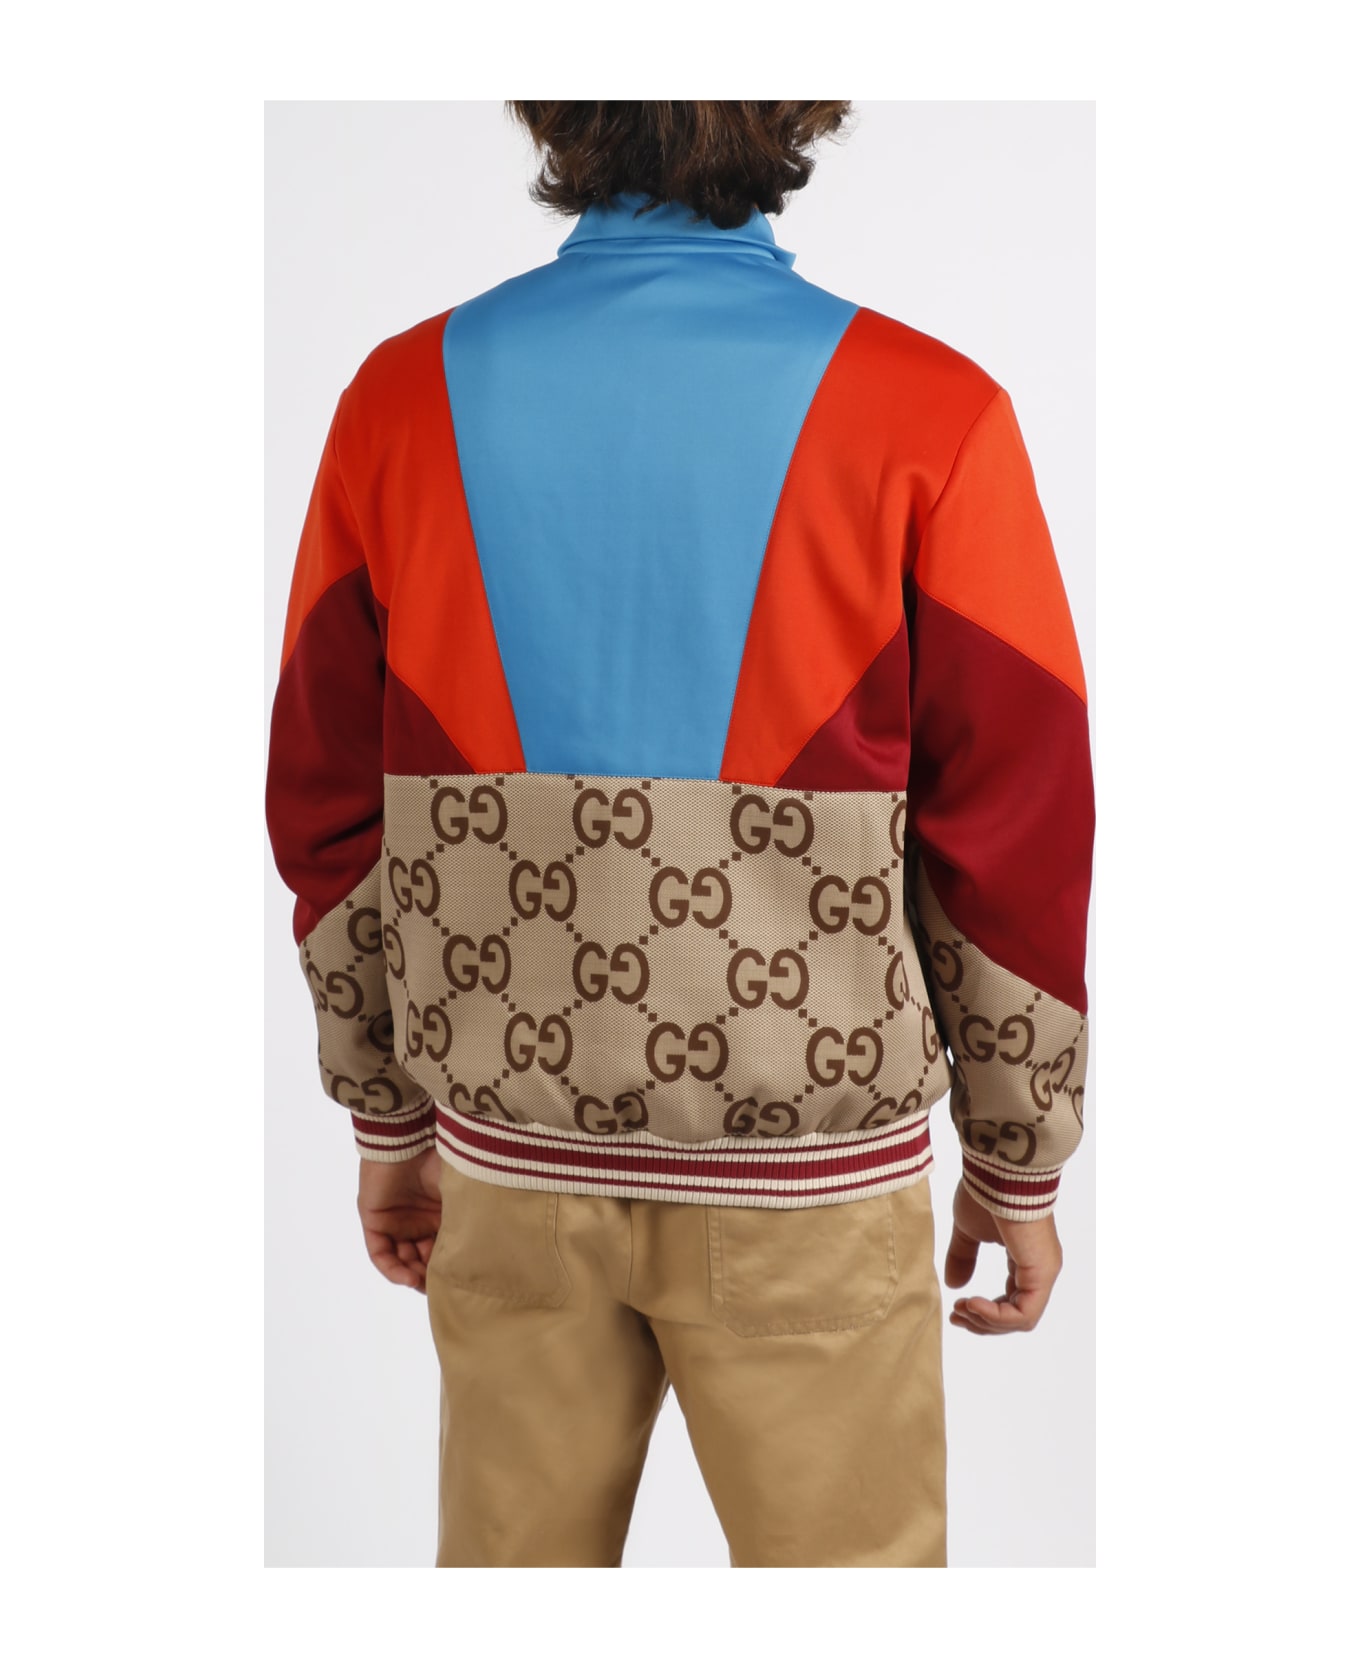 Gucci Lightweight Neoprene Zip Jacket - Beige/Ebano